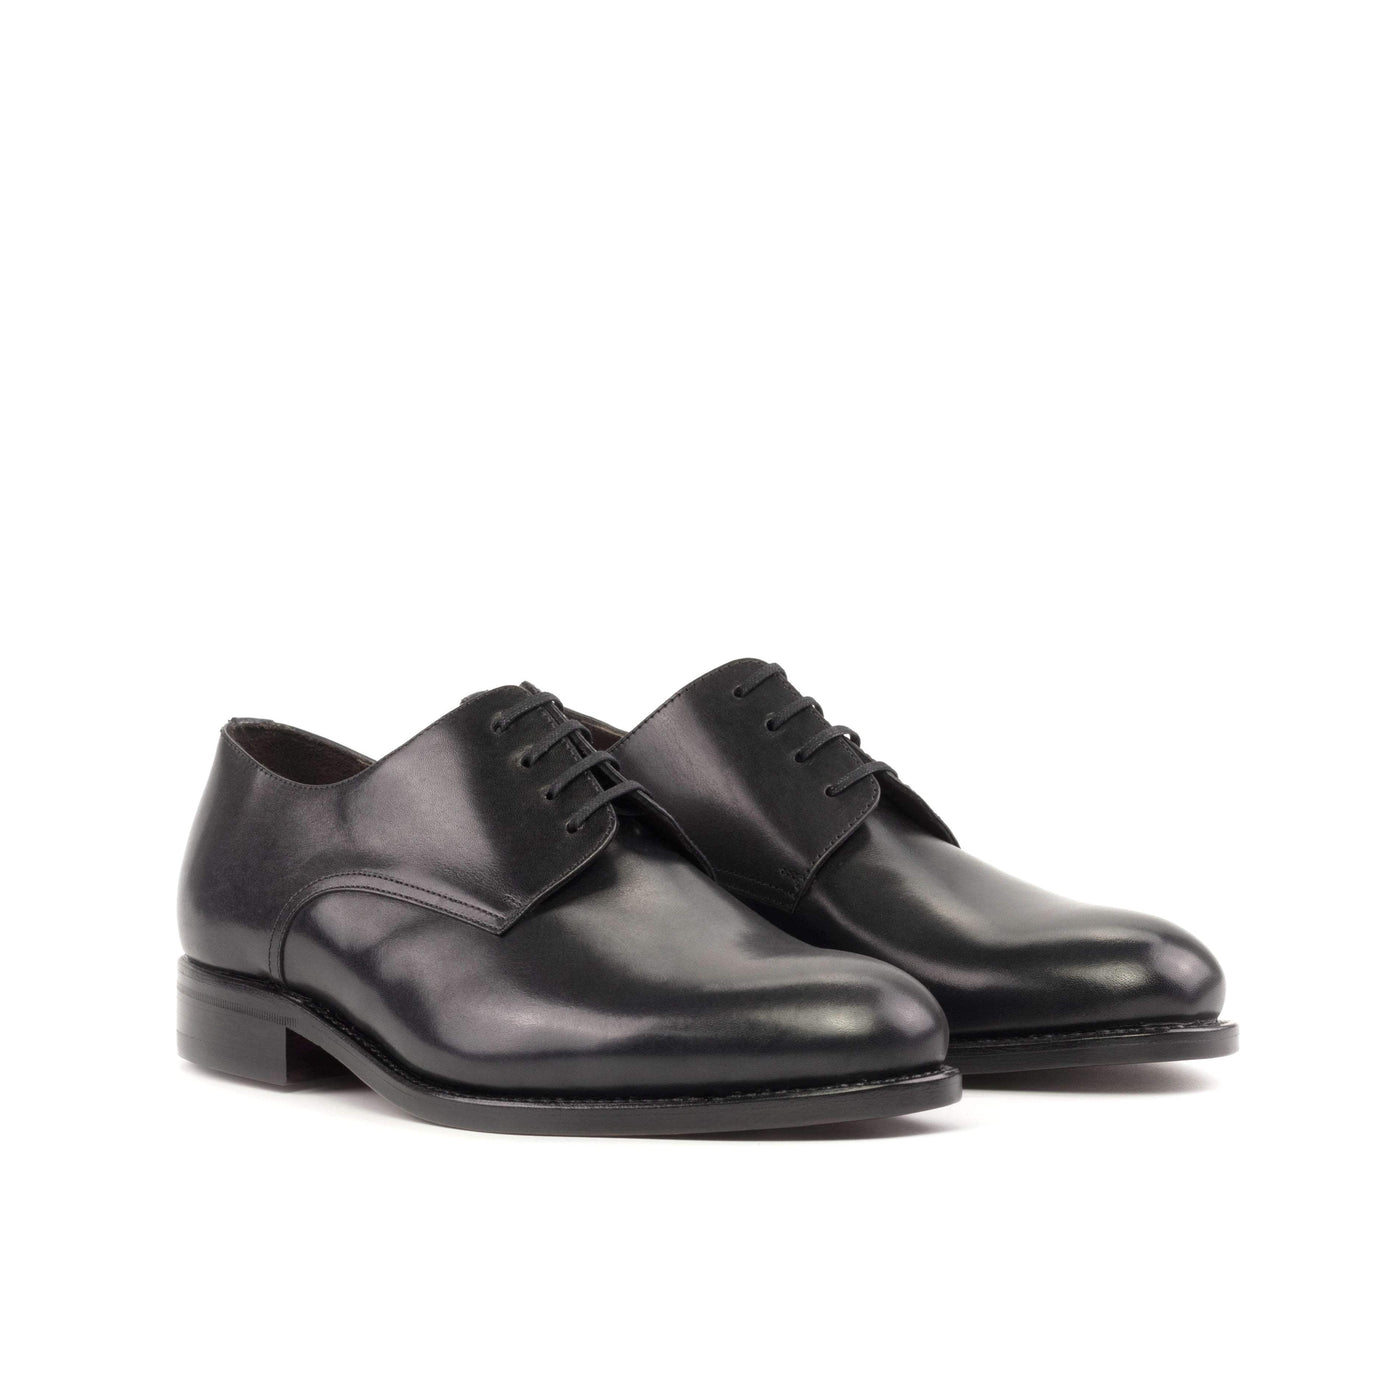 Men's Derby Shoes Leather Goodyear Welt Black 5244 6- MERRIMIUM